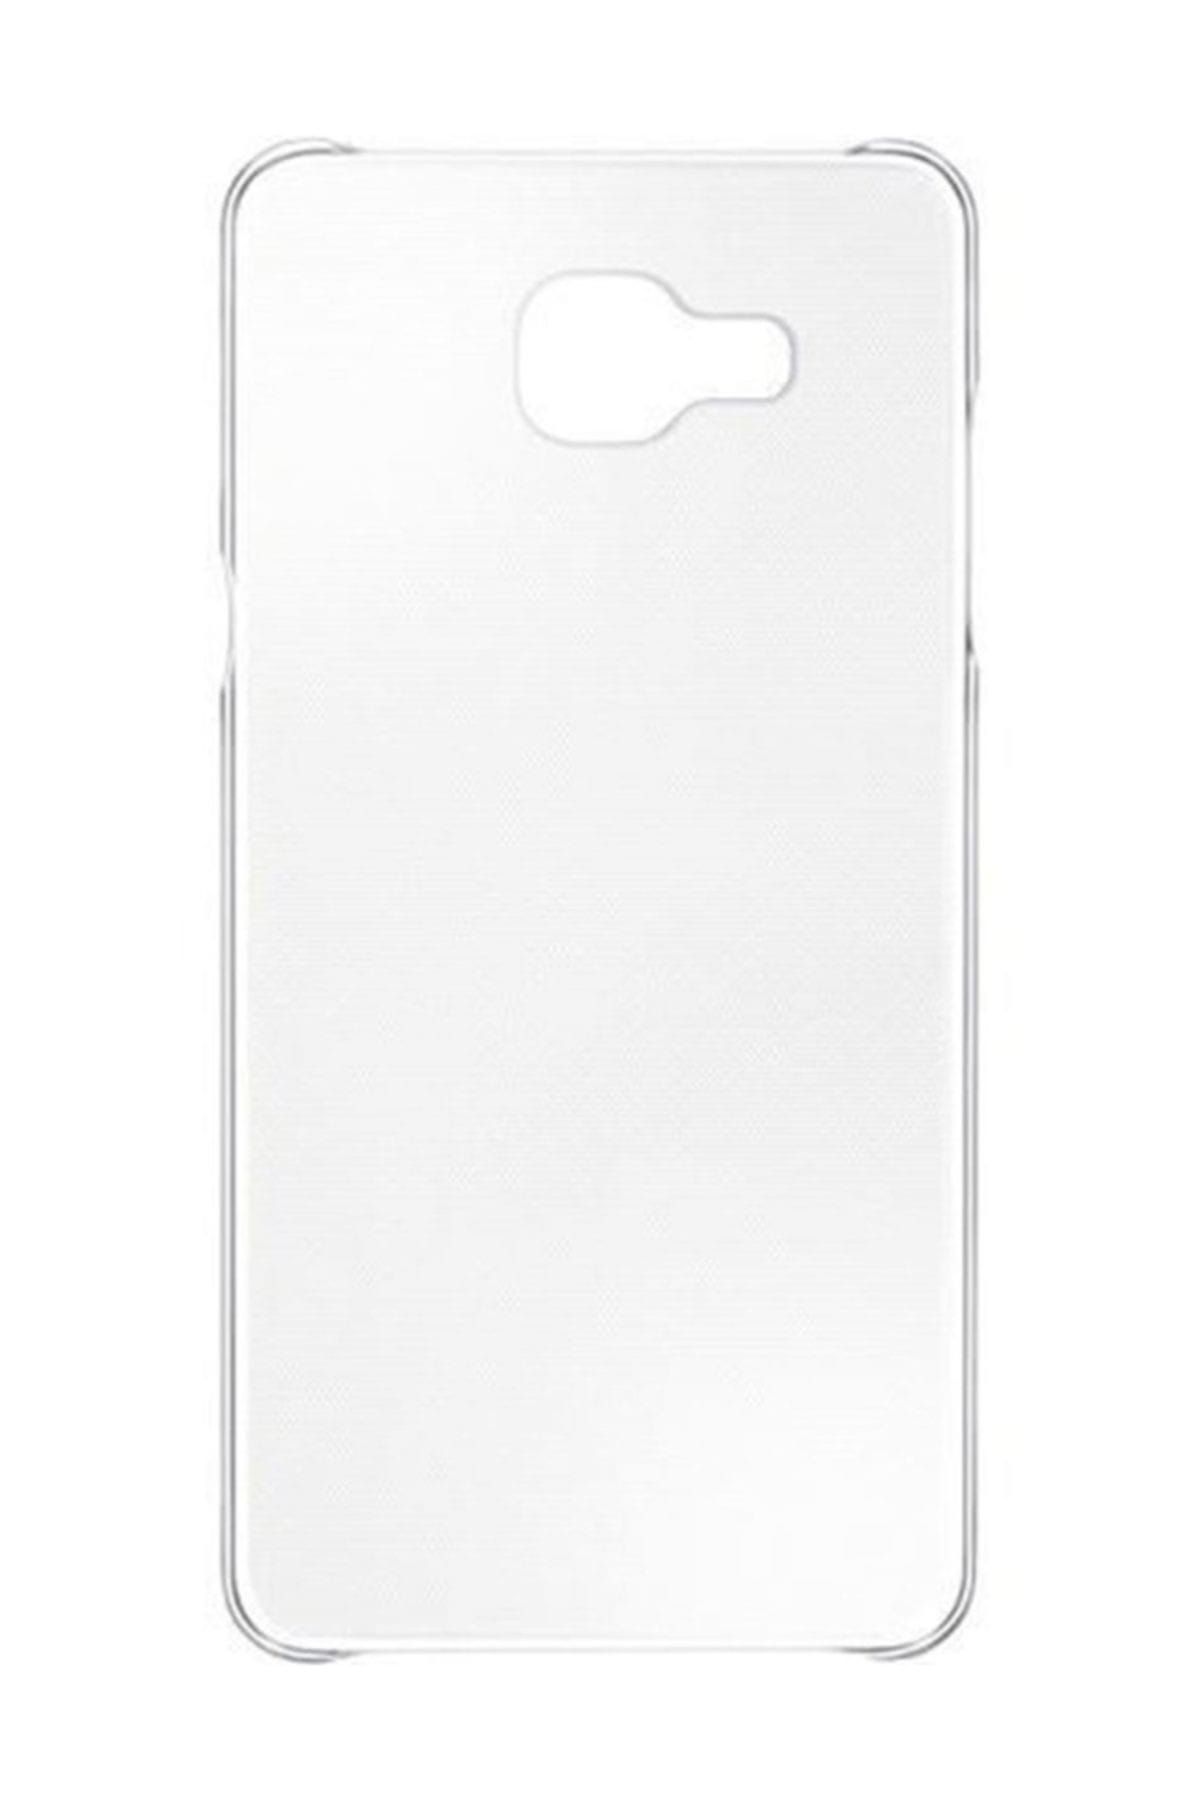 Samsung A510F Galaxy A5 (2016) Slim Cover Orjinal Kılıf EF-AA510CTEGWW